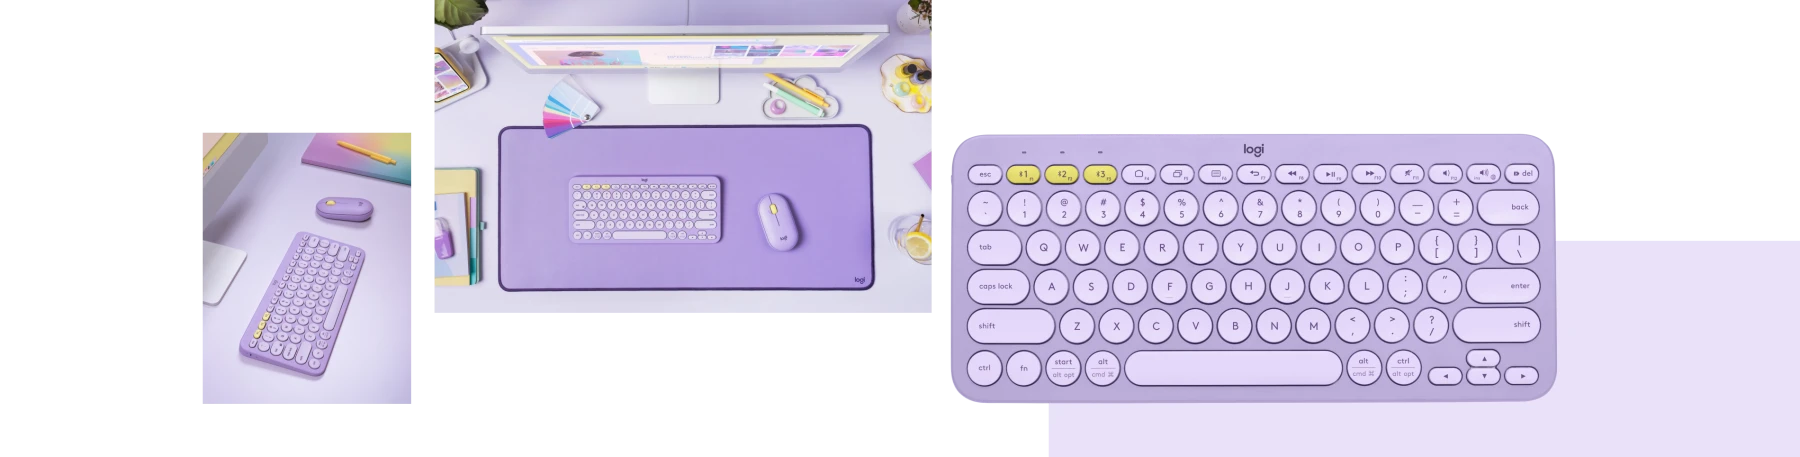 k380-lavender-collage-desktop